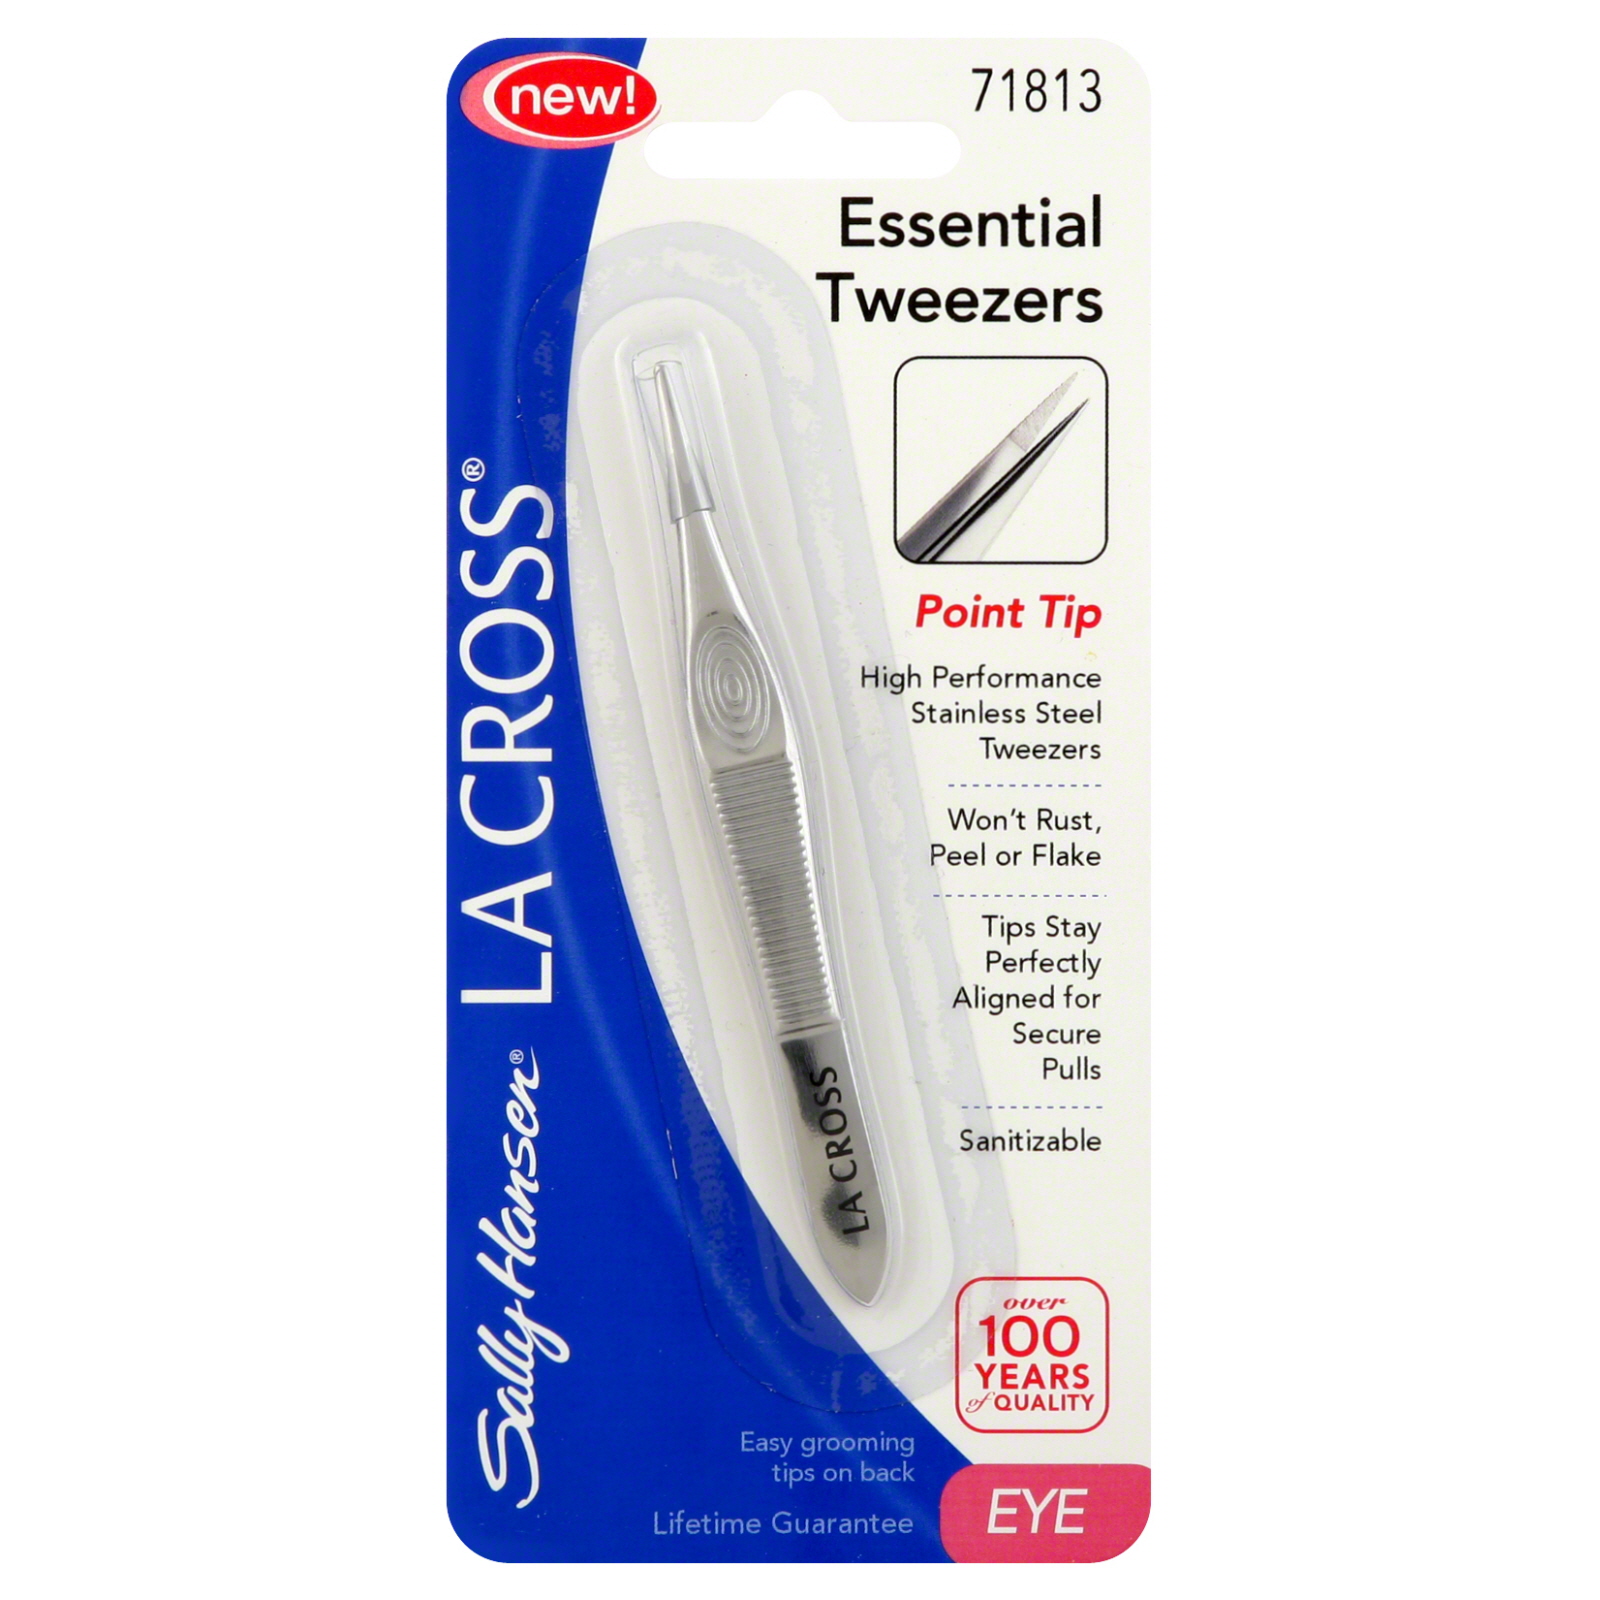 Sally Hansen La Cross Essential Tweezers, Point Tip, 1 tweezer